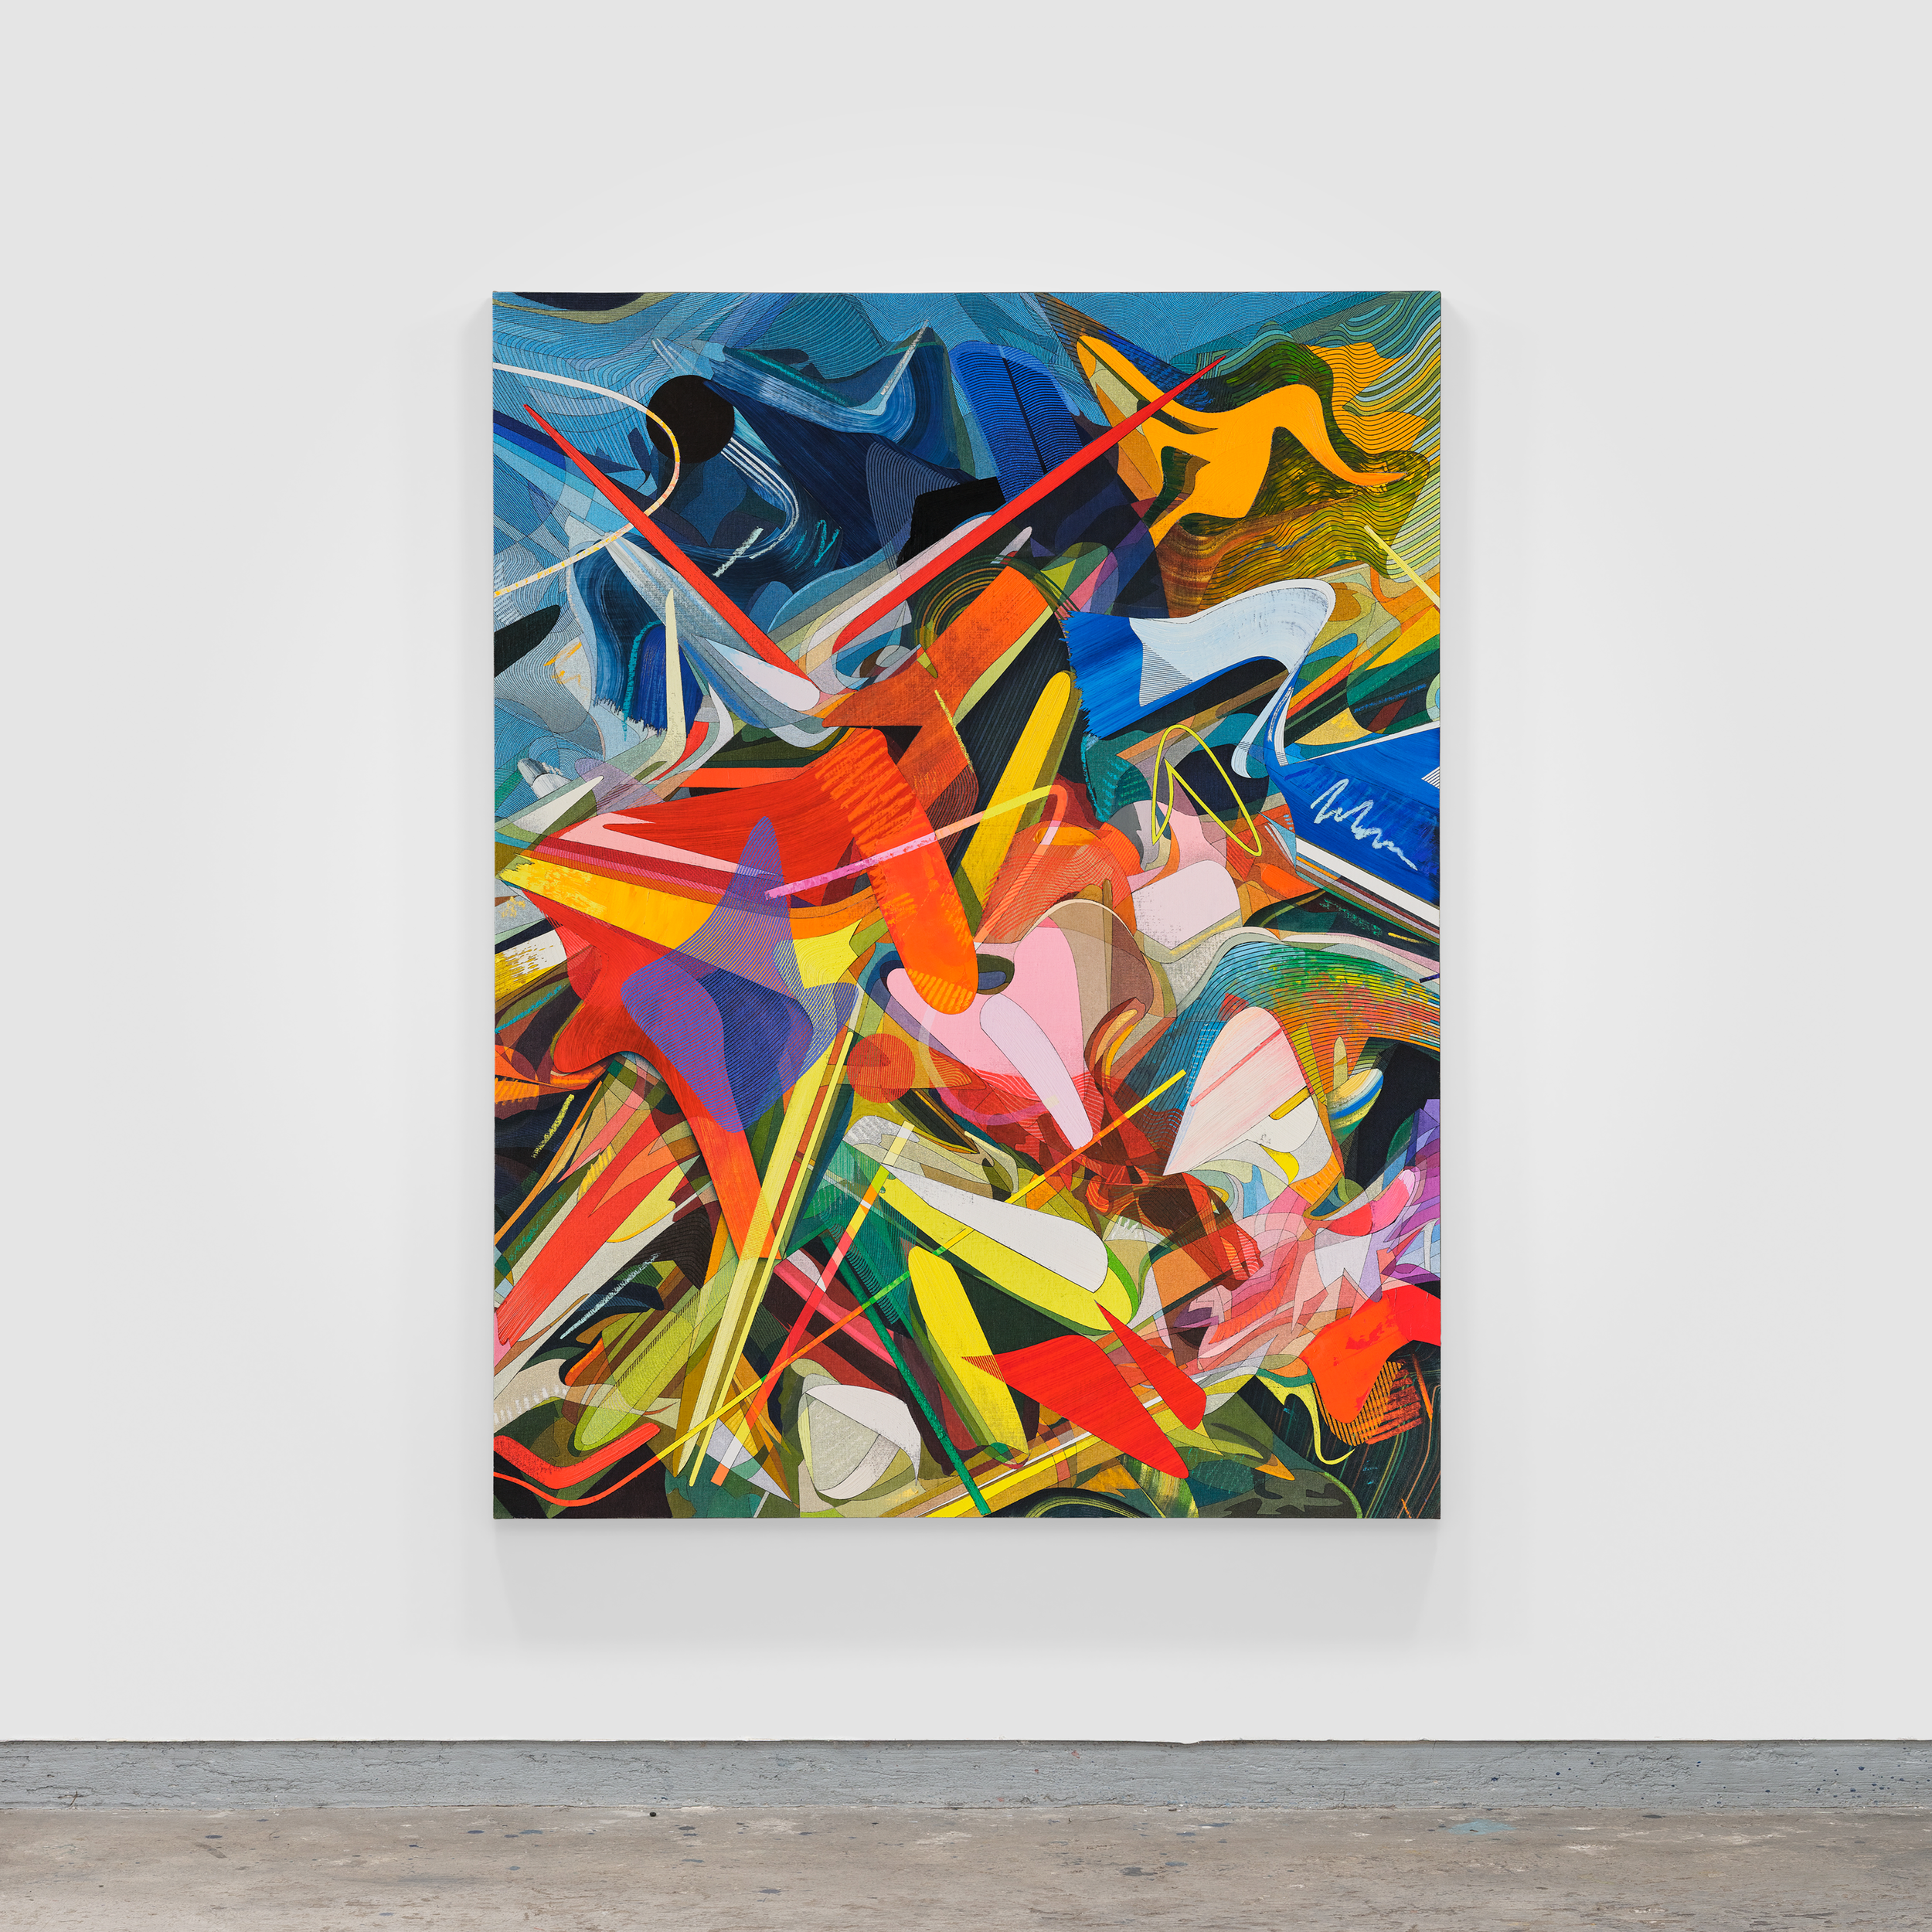 El-Color-detras-del-Velo,-Atlantico,-Oil-&-Acrylic-on-Linen-mounted-on-Panel,-220-x-170-cm-2022-by-Omar-Rodriguez-Graham-(7).png